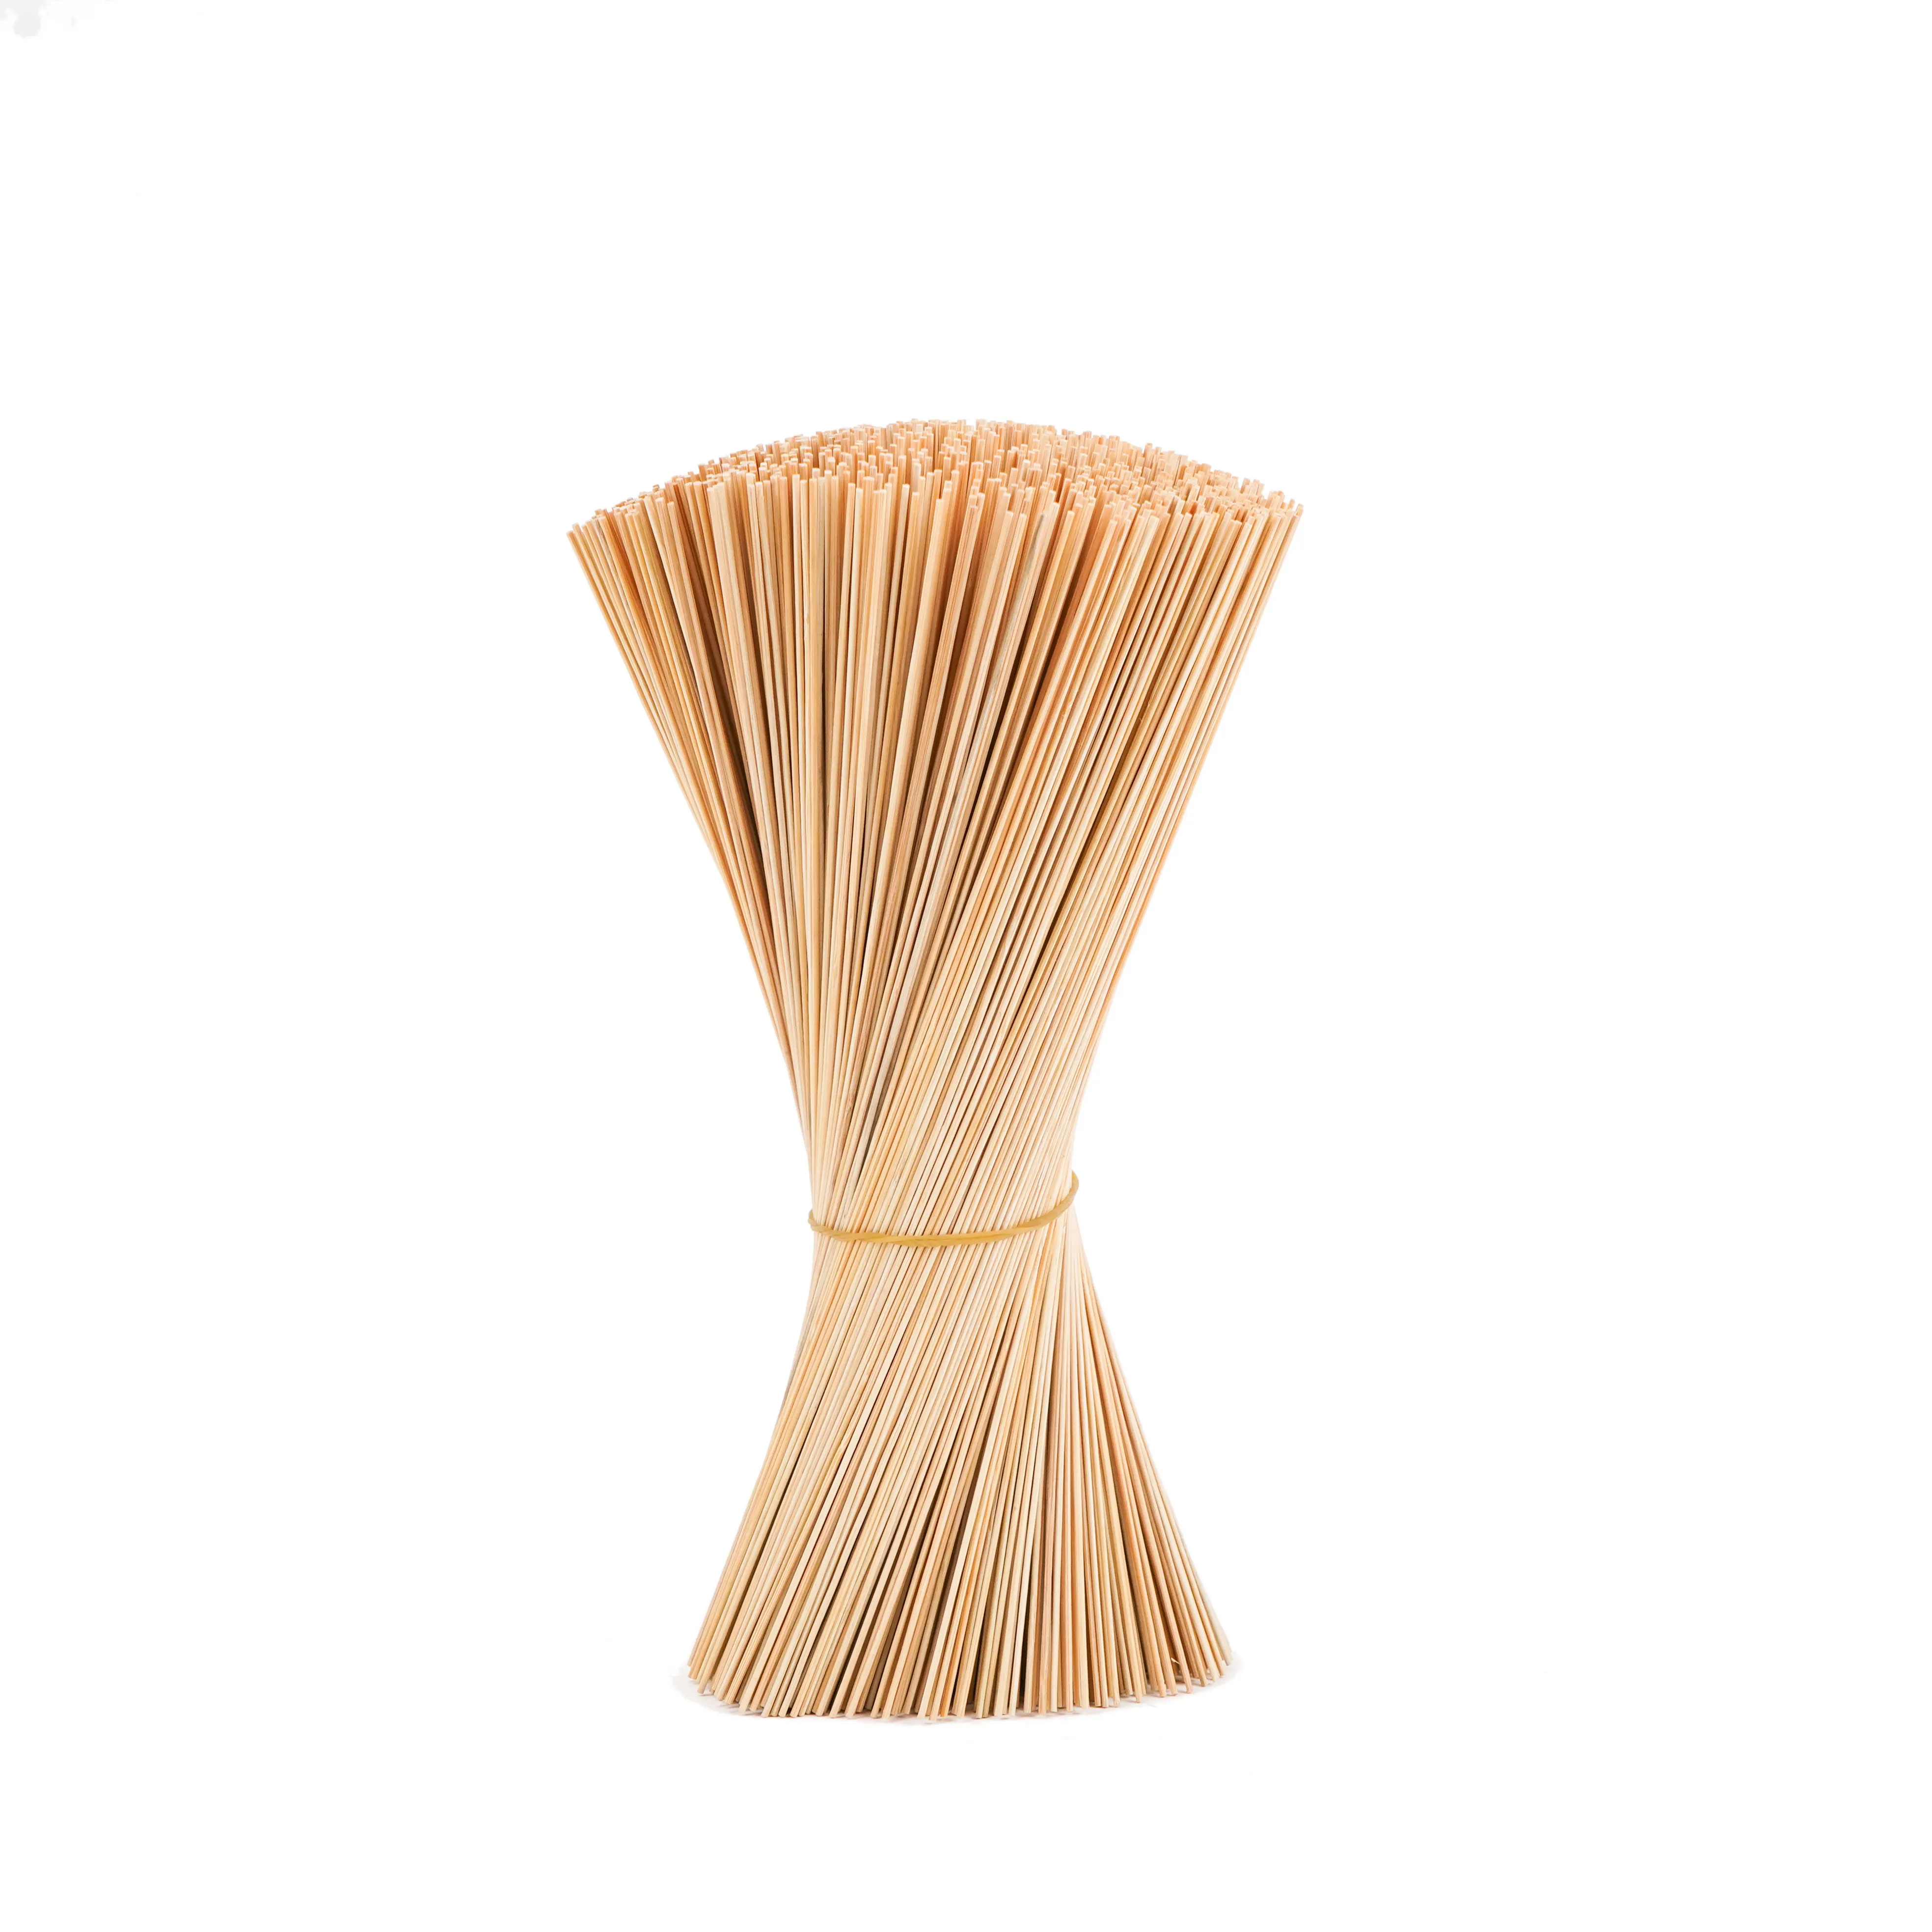 Venta al por mayor mejor calidad Agarbatti mejor precio incienso natural palitos de bambú pinchos a granel en Vietnam